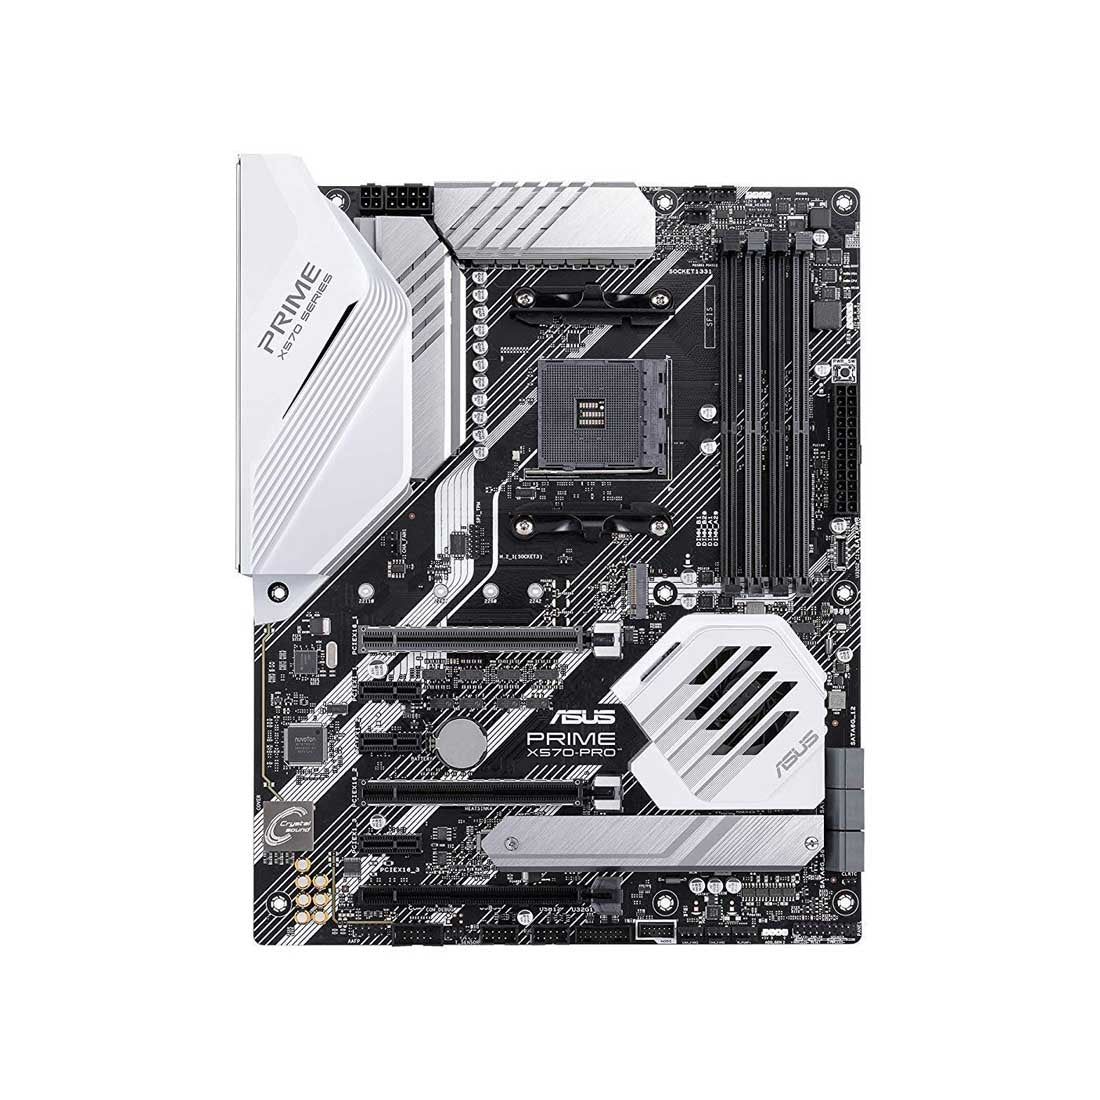 Asus Prime X570-PRO CSM AMD AM4 ATX मदरबोर्ड PCIe 4.0 डुअल M.2 और ऑरा सिंक के साथ